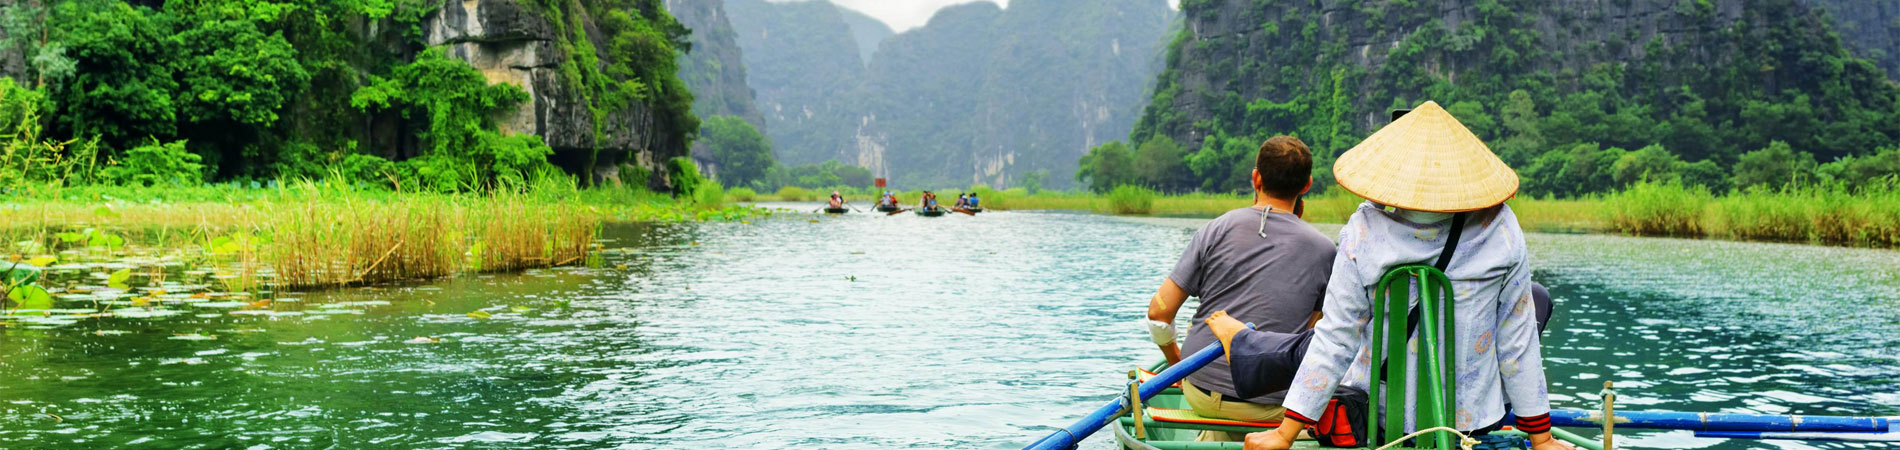 مکان های گردشگری ویتنام